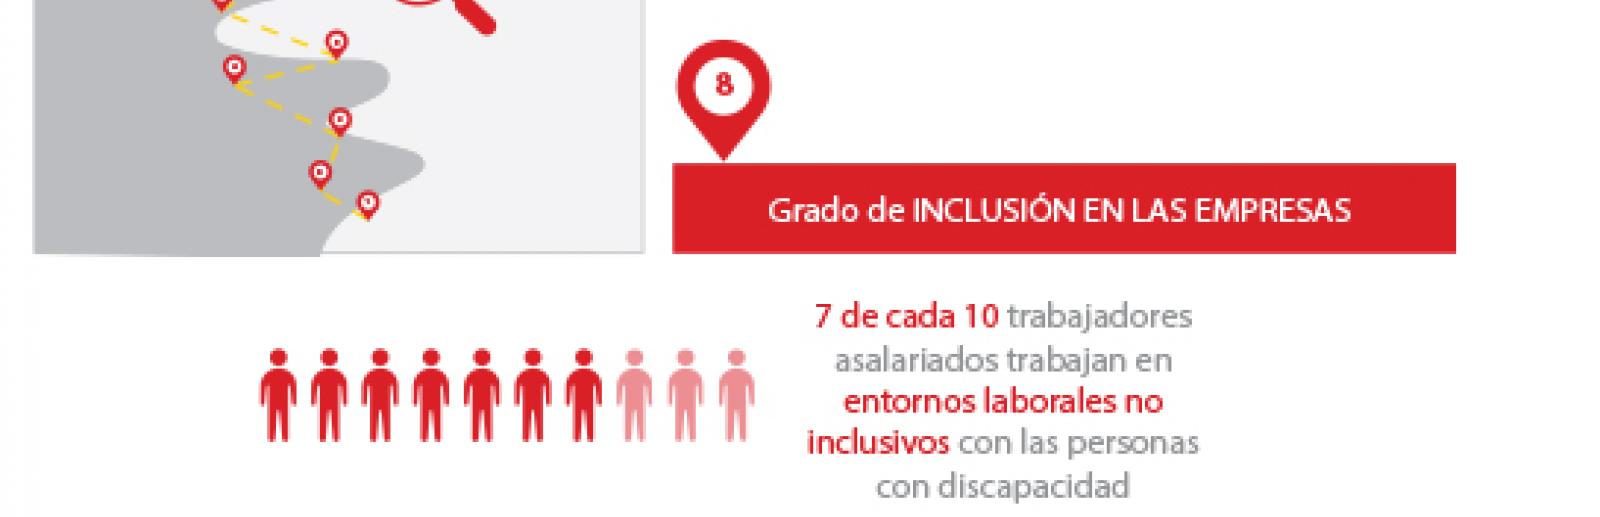 7 de cada 10 trabajadores asalariados trabajan en entornos laborales no inclusivos con las personas con discapacidad